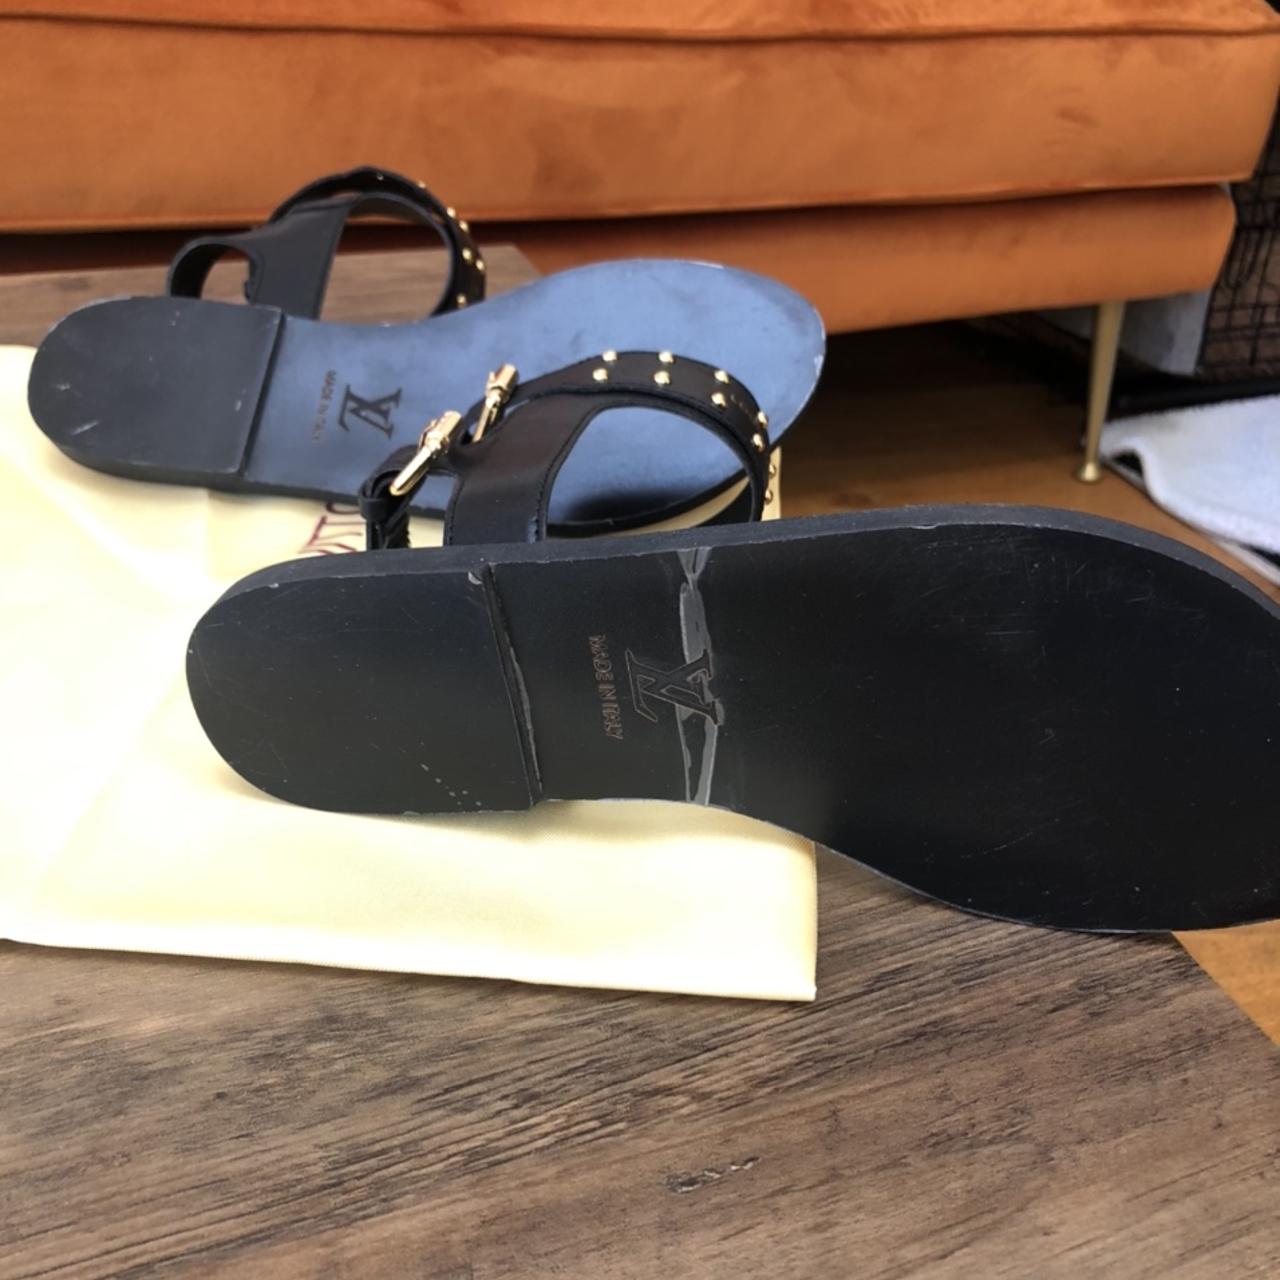 Louis Vuitton Passenger Sandals size 6 / 39